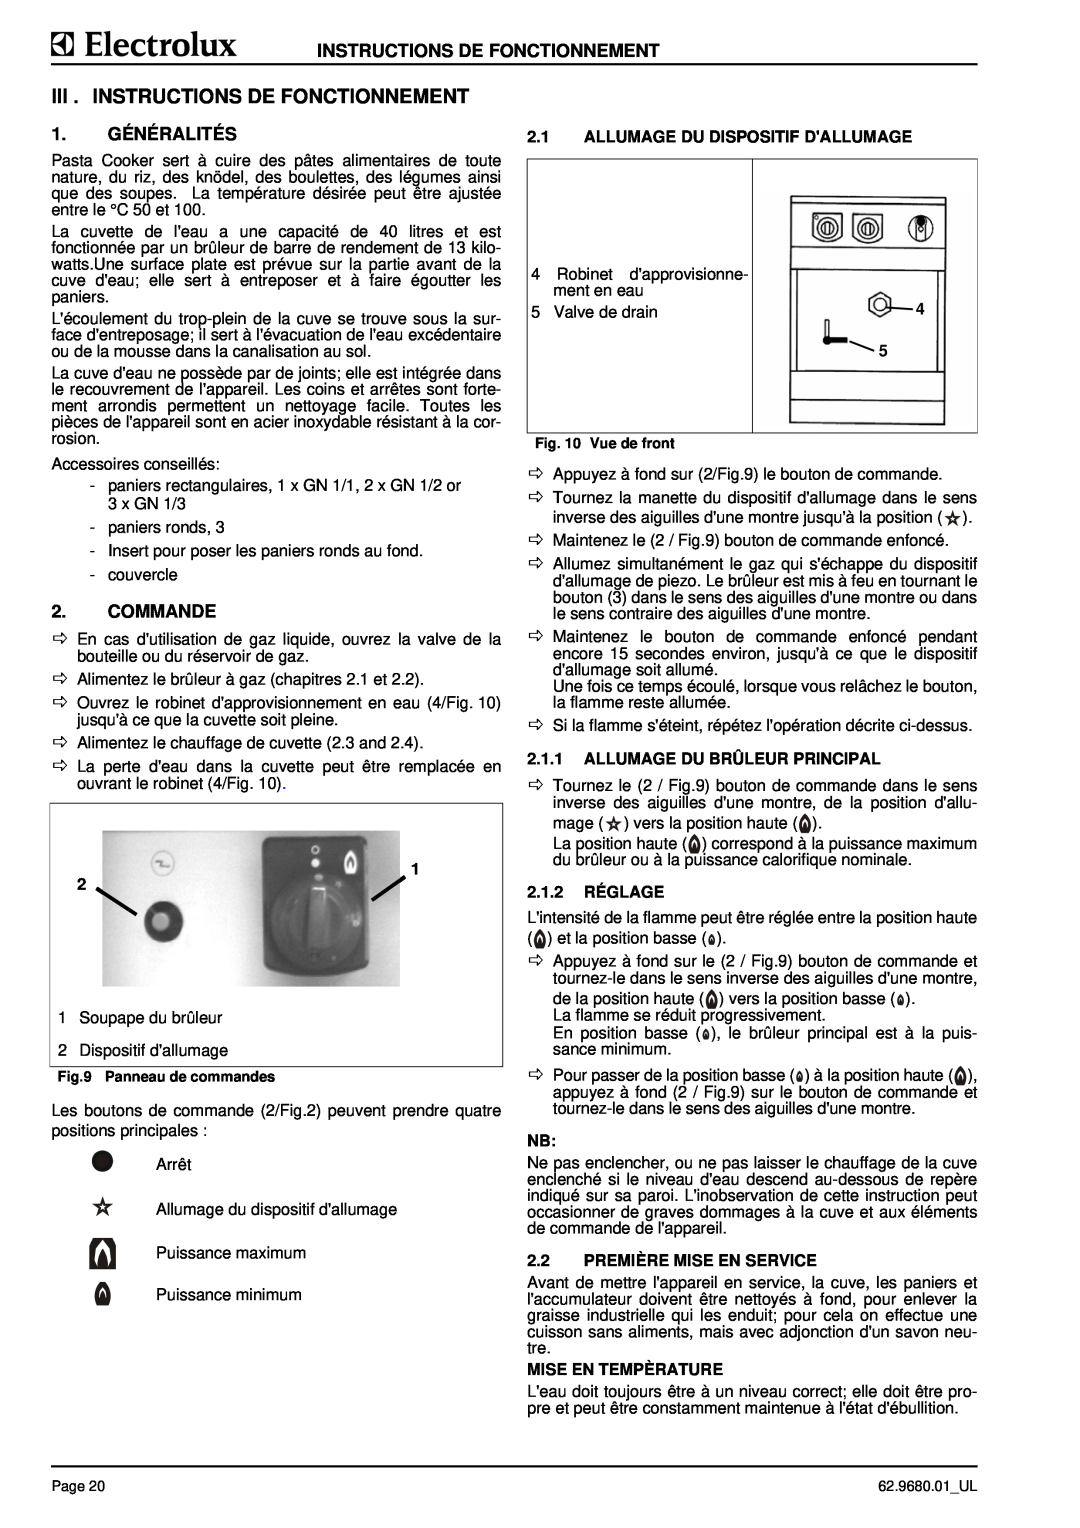 Electrolux 9CHG584138 manual Iii . Instructions De Fonctionnement, Généralités, Commande, Allumage Du Dispositif Dallumage 